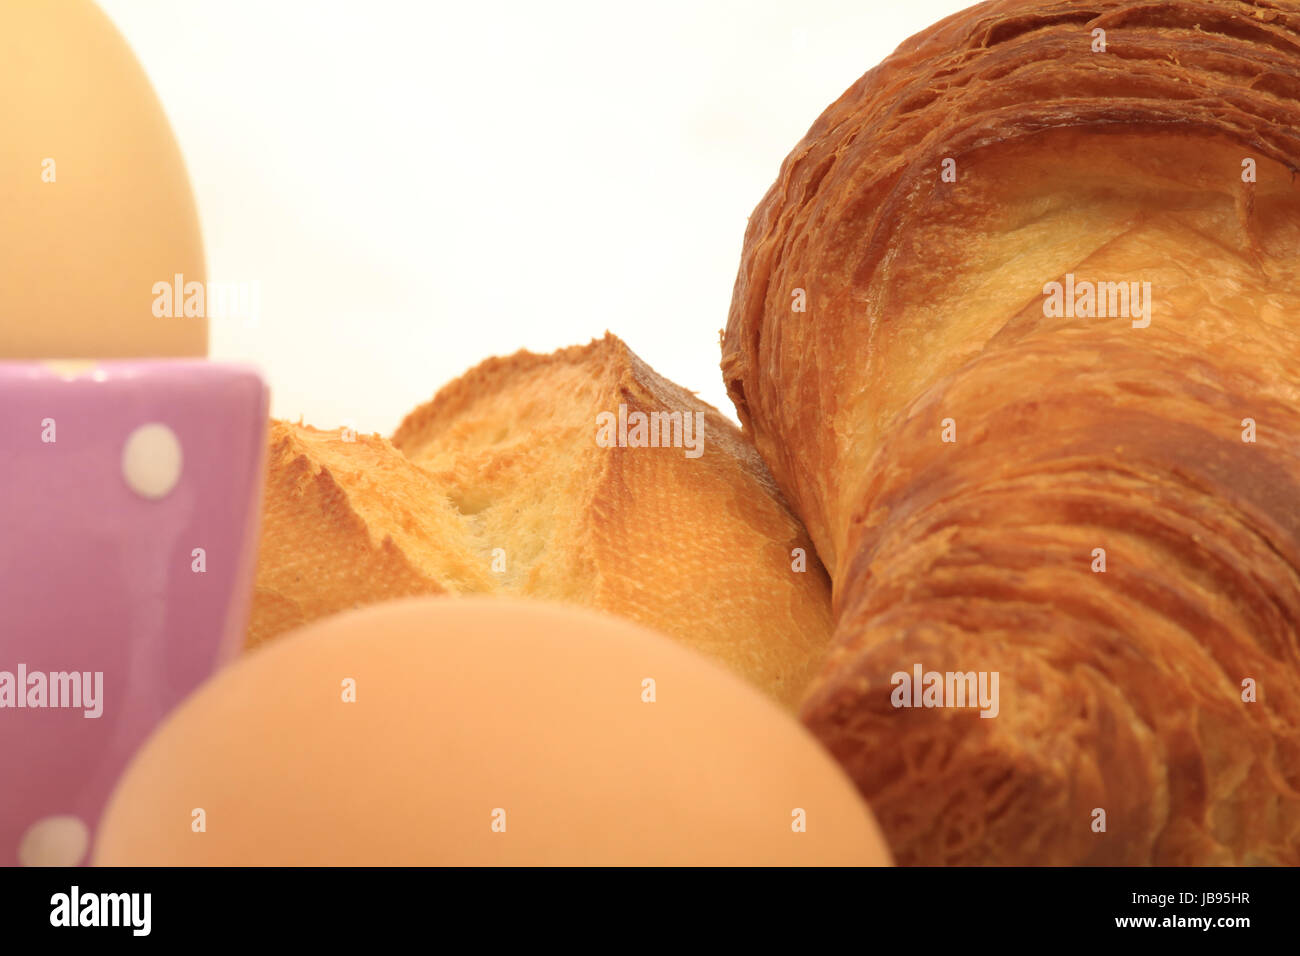 Ausschnitt eines Frühstückstisches mit Croissant, Brötchen, Eiern und Eierbecher Stock Photo